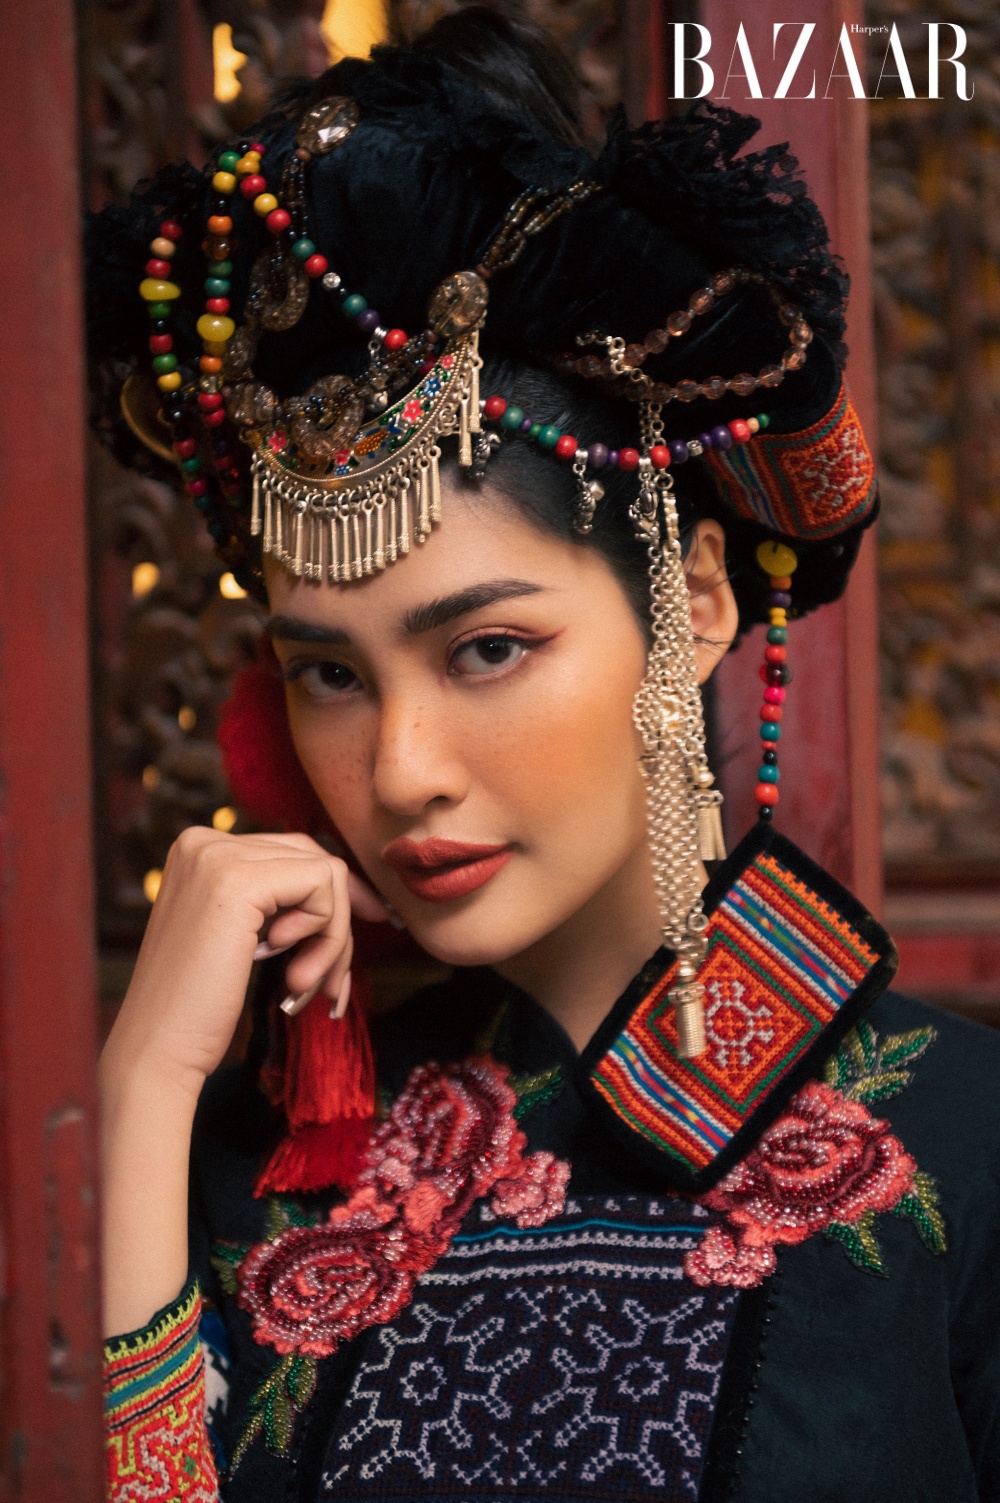 Nông Thúy Hằng, đương kim Hoa hậu Dân tộc Việt Nam 